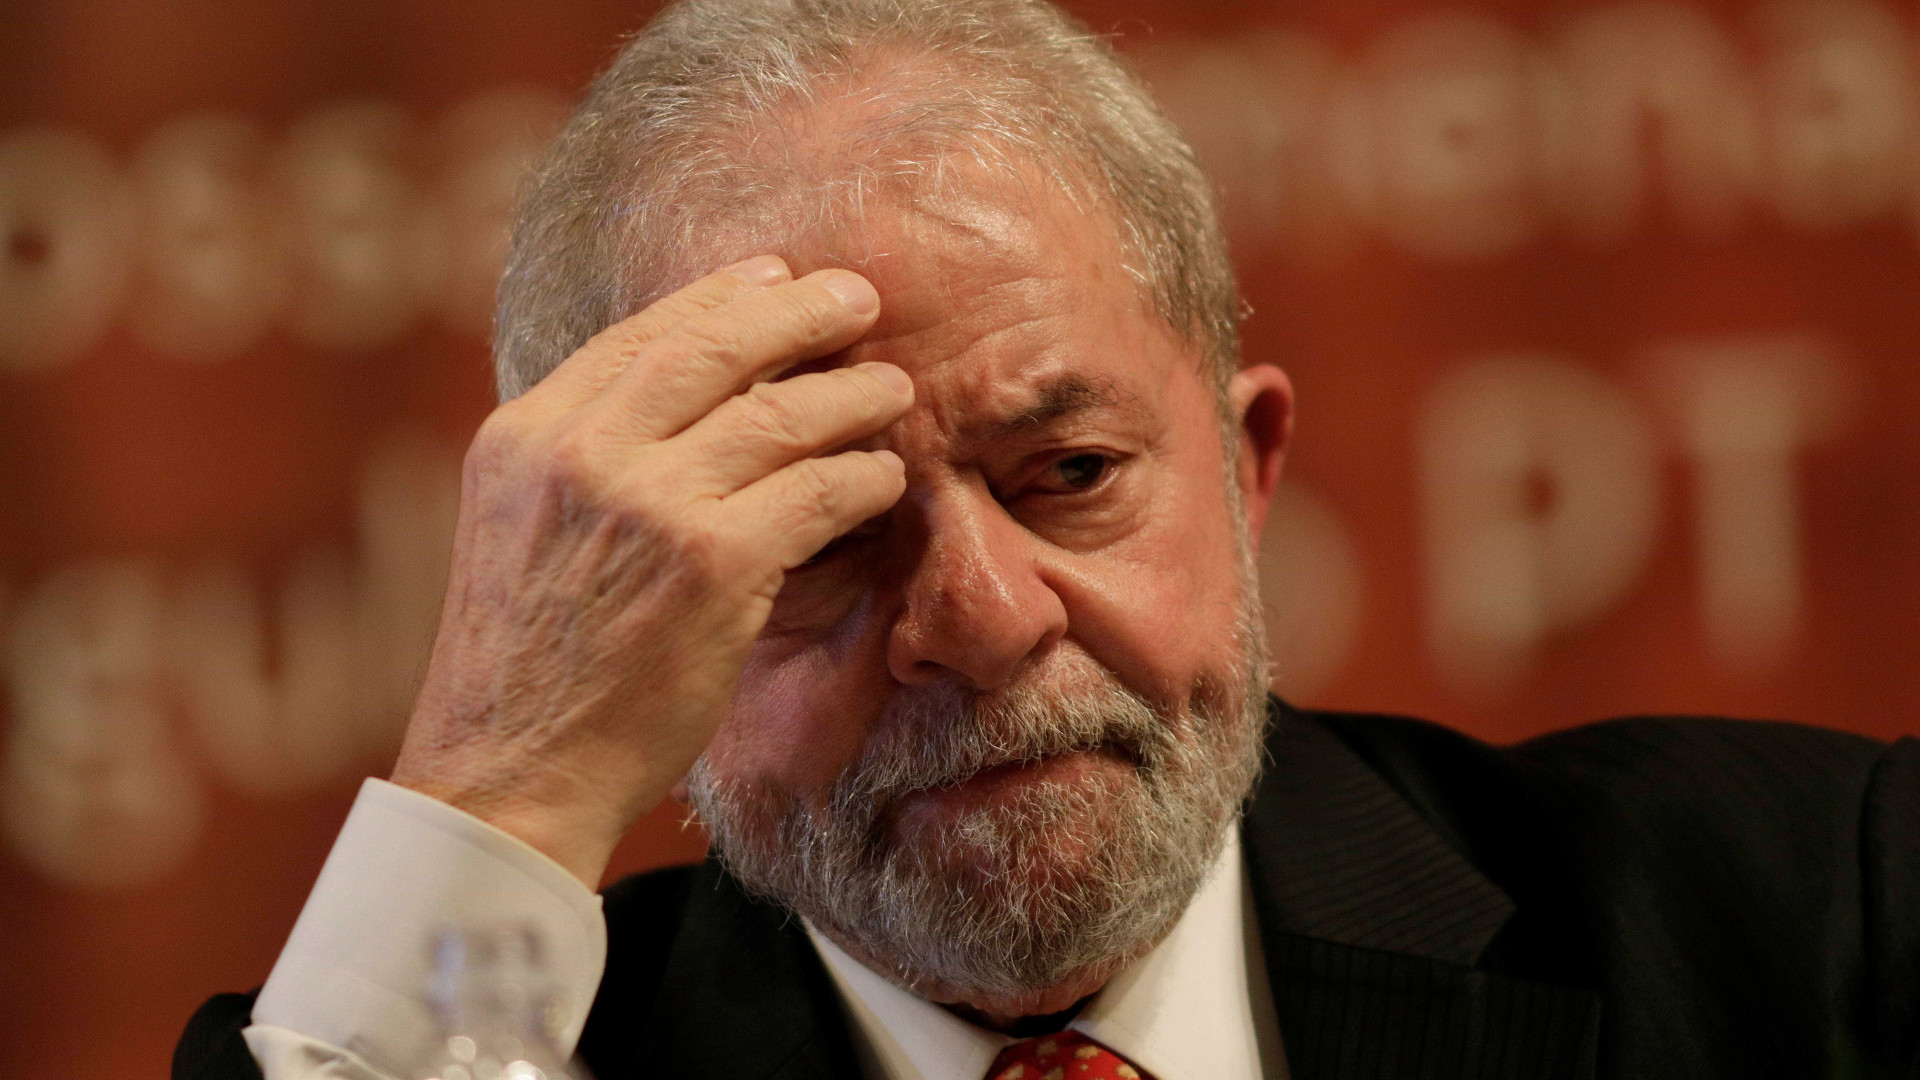 Em denúncia, Janot aponta R$ 230 milhões em propina para Lula